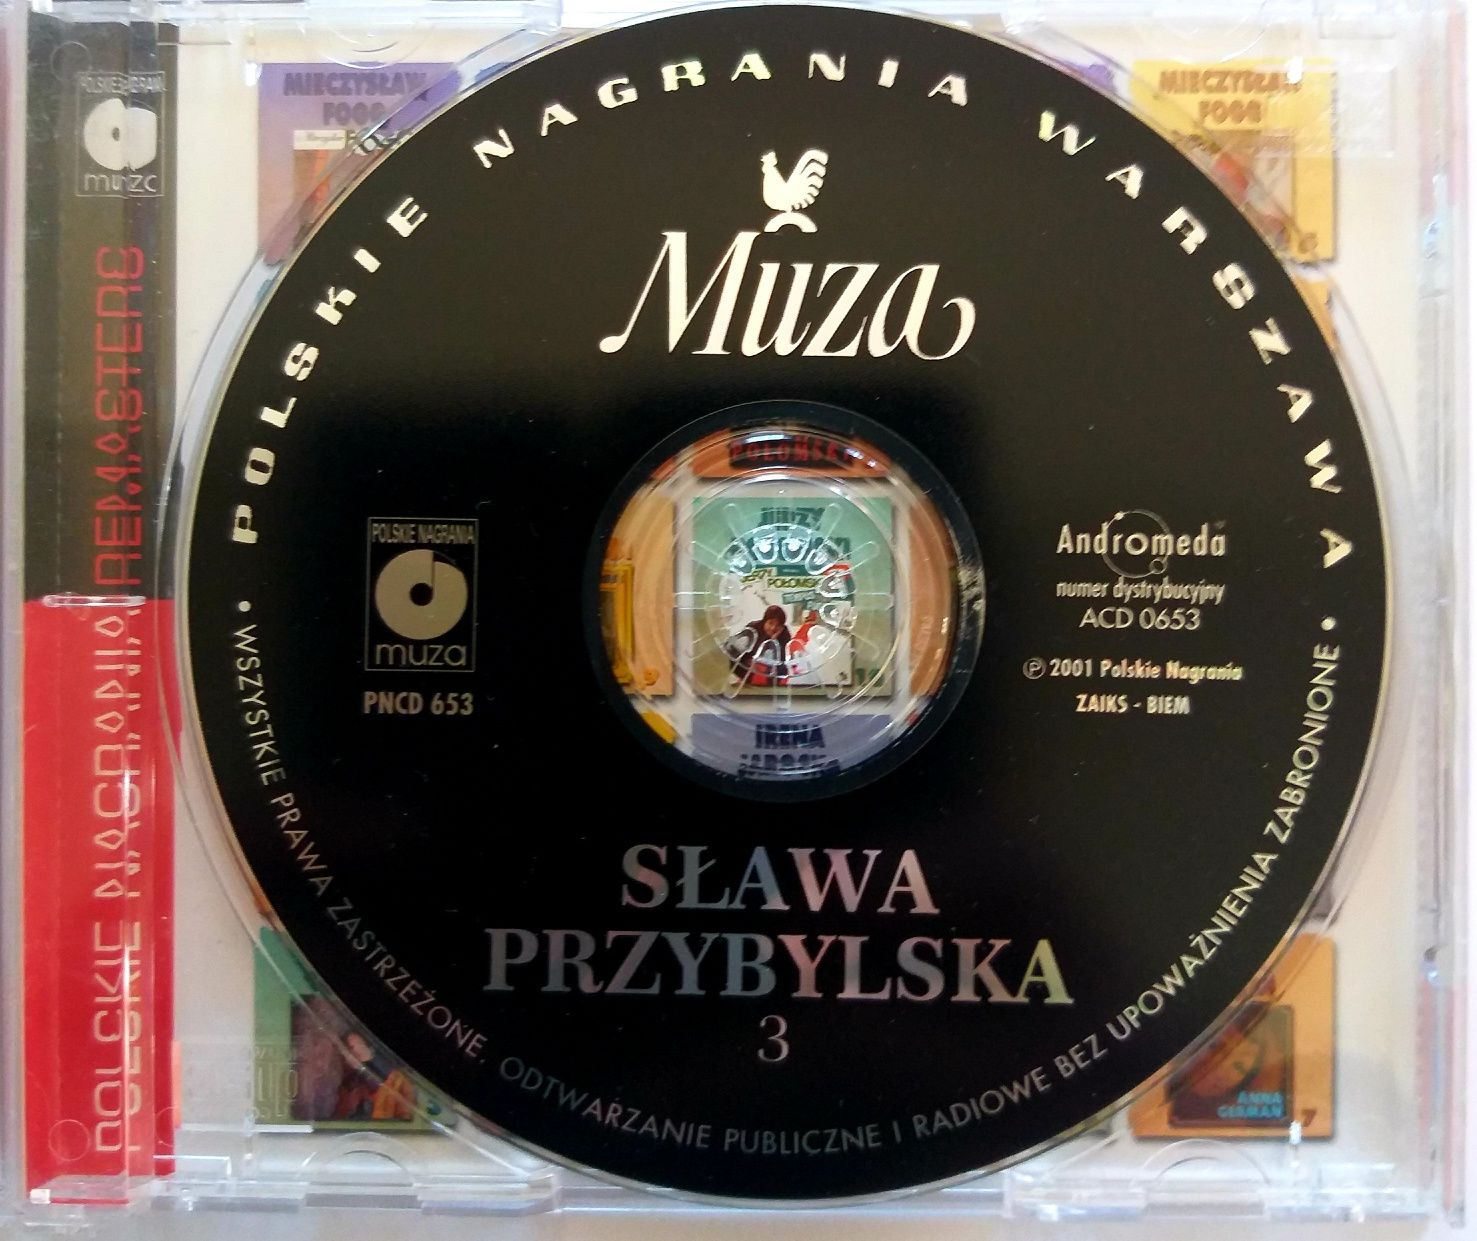 Sława Przybylska 3 2001r